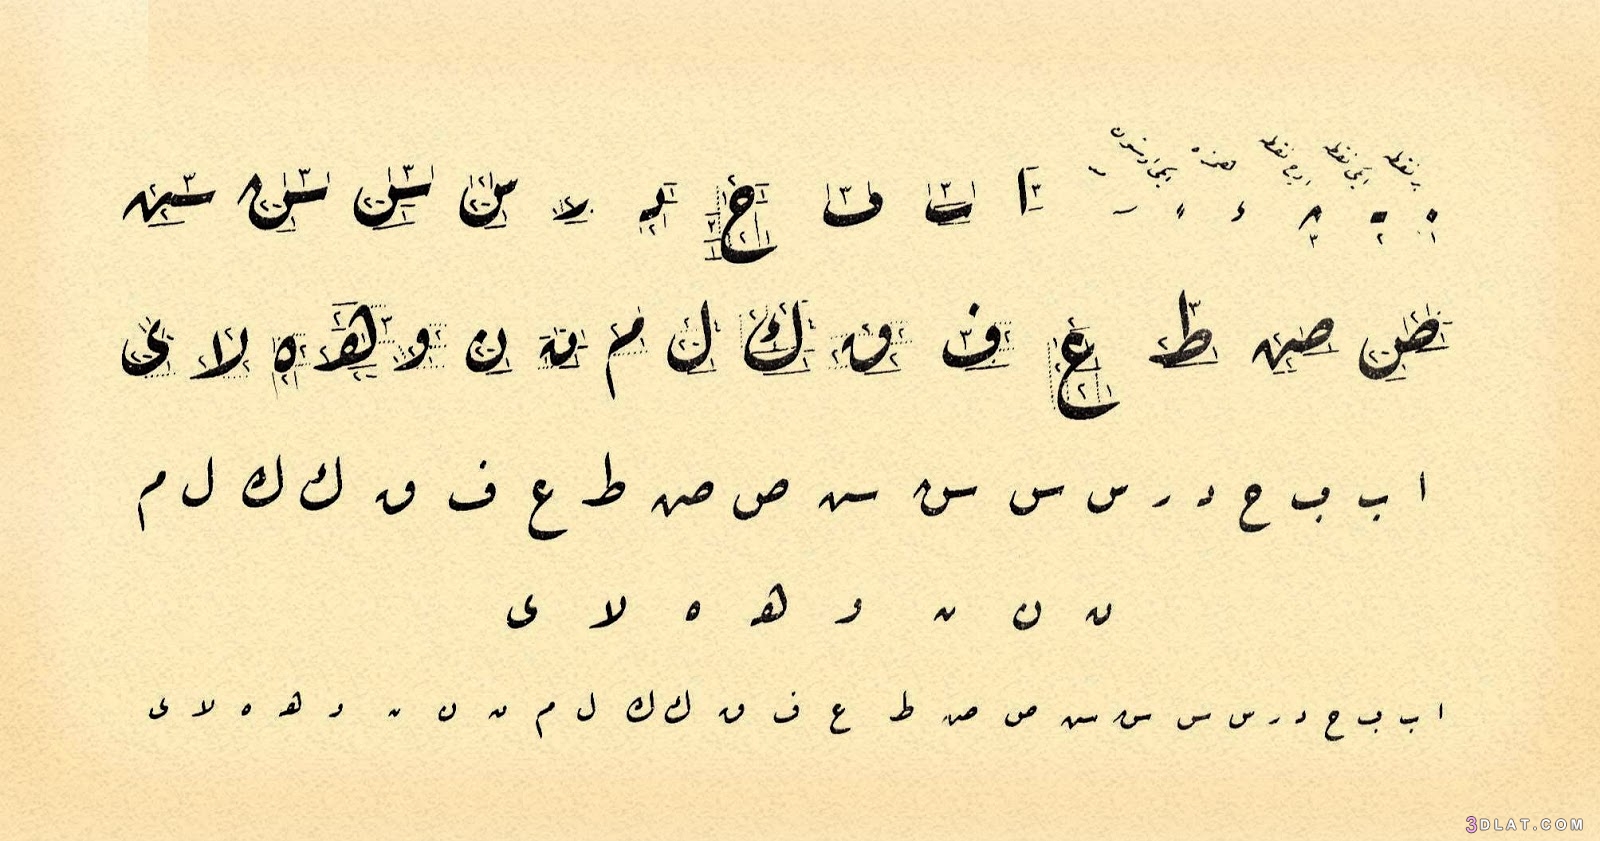 الخط العربي ،انواع الخطوط الفنية .